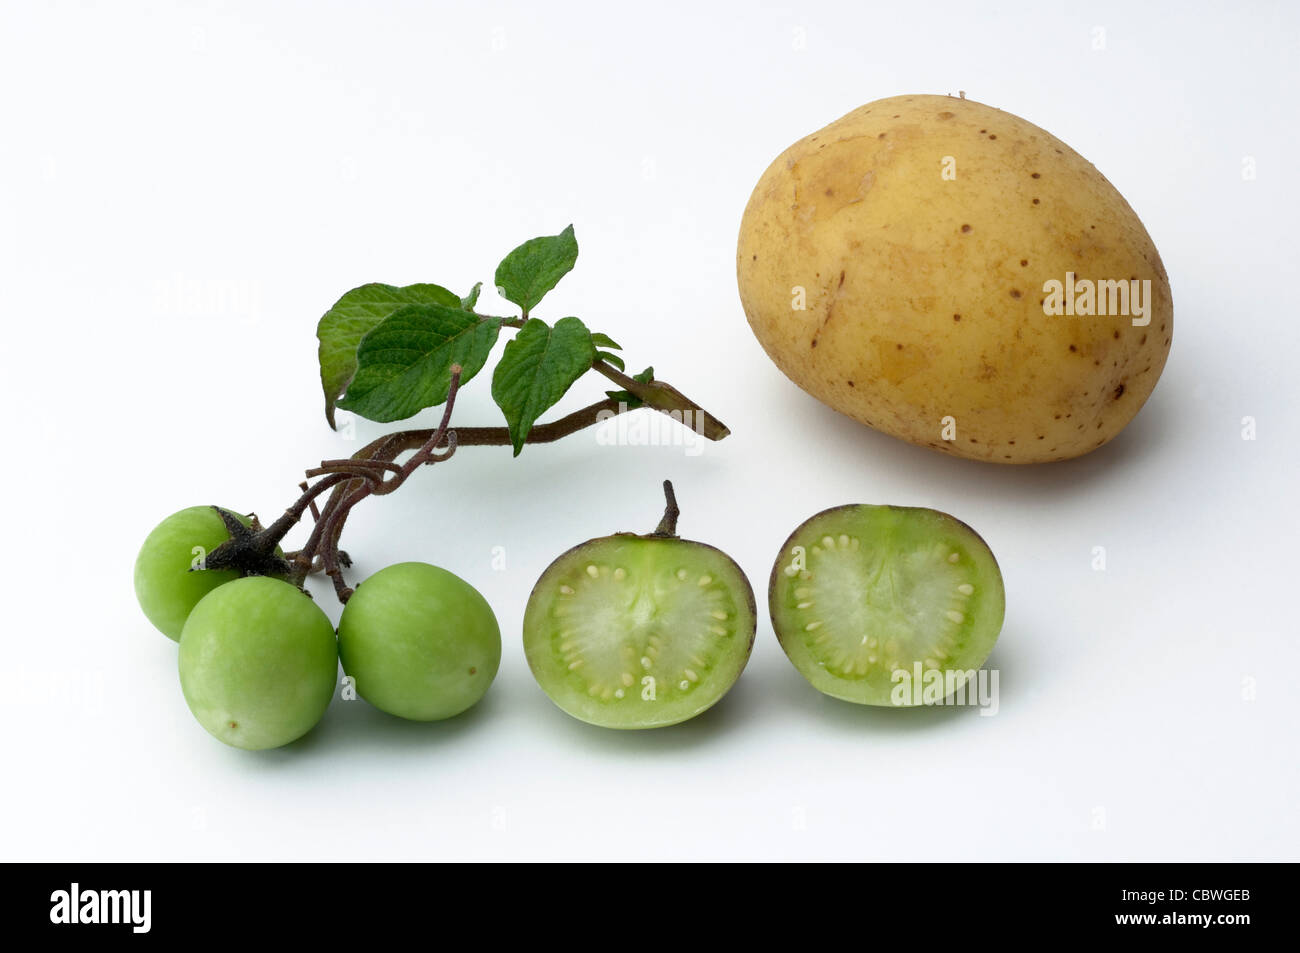 La pomme de terre (Solanum tuberosum). Twig avec petits fruits verts et tubercule comestible. Studio photo sur un fond blanc. Banque D'Images